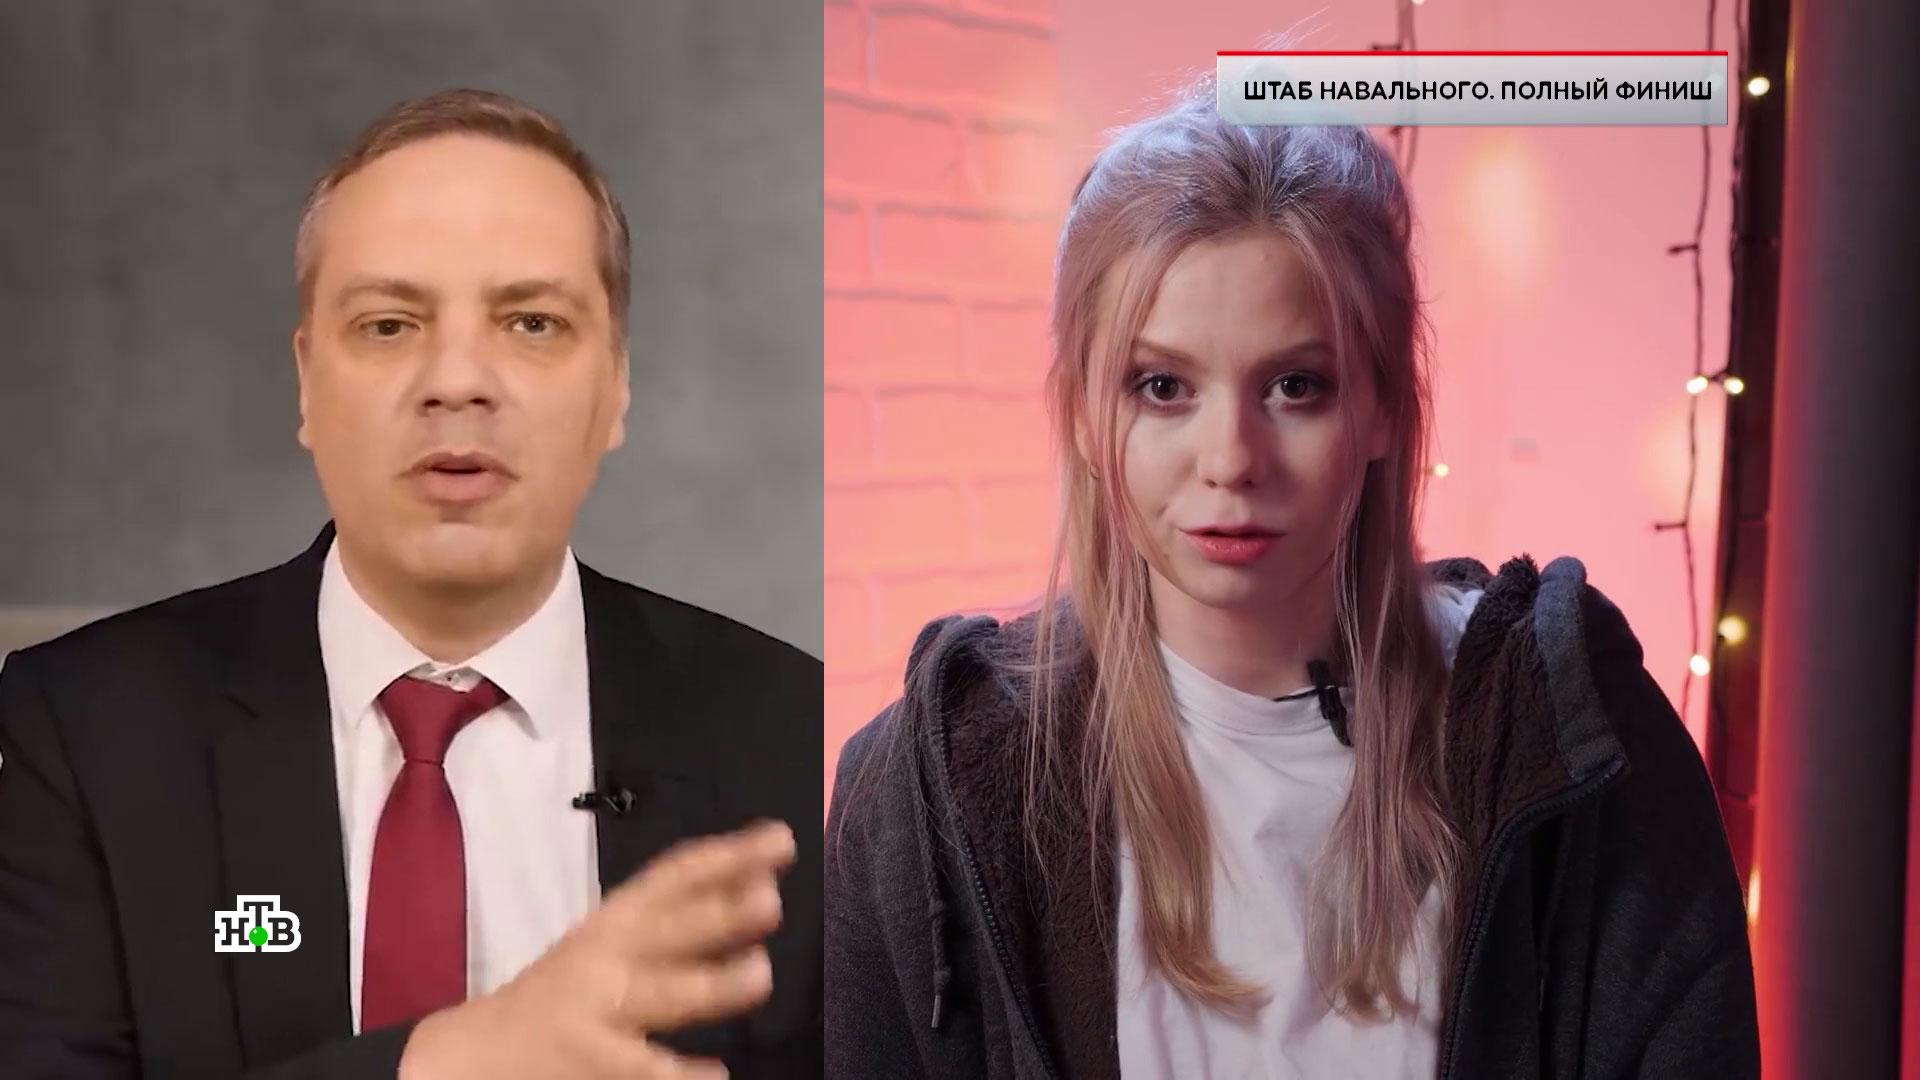 «ЧП. Расследование»: «Штаб Навального. Полный финиш»